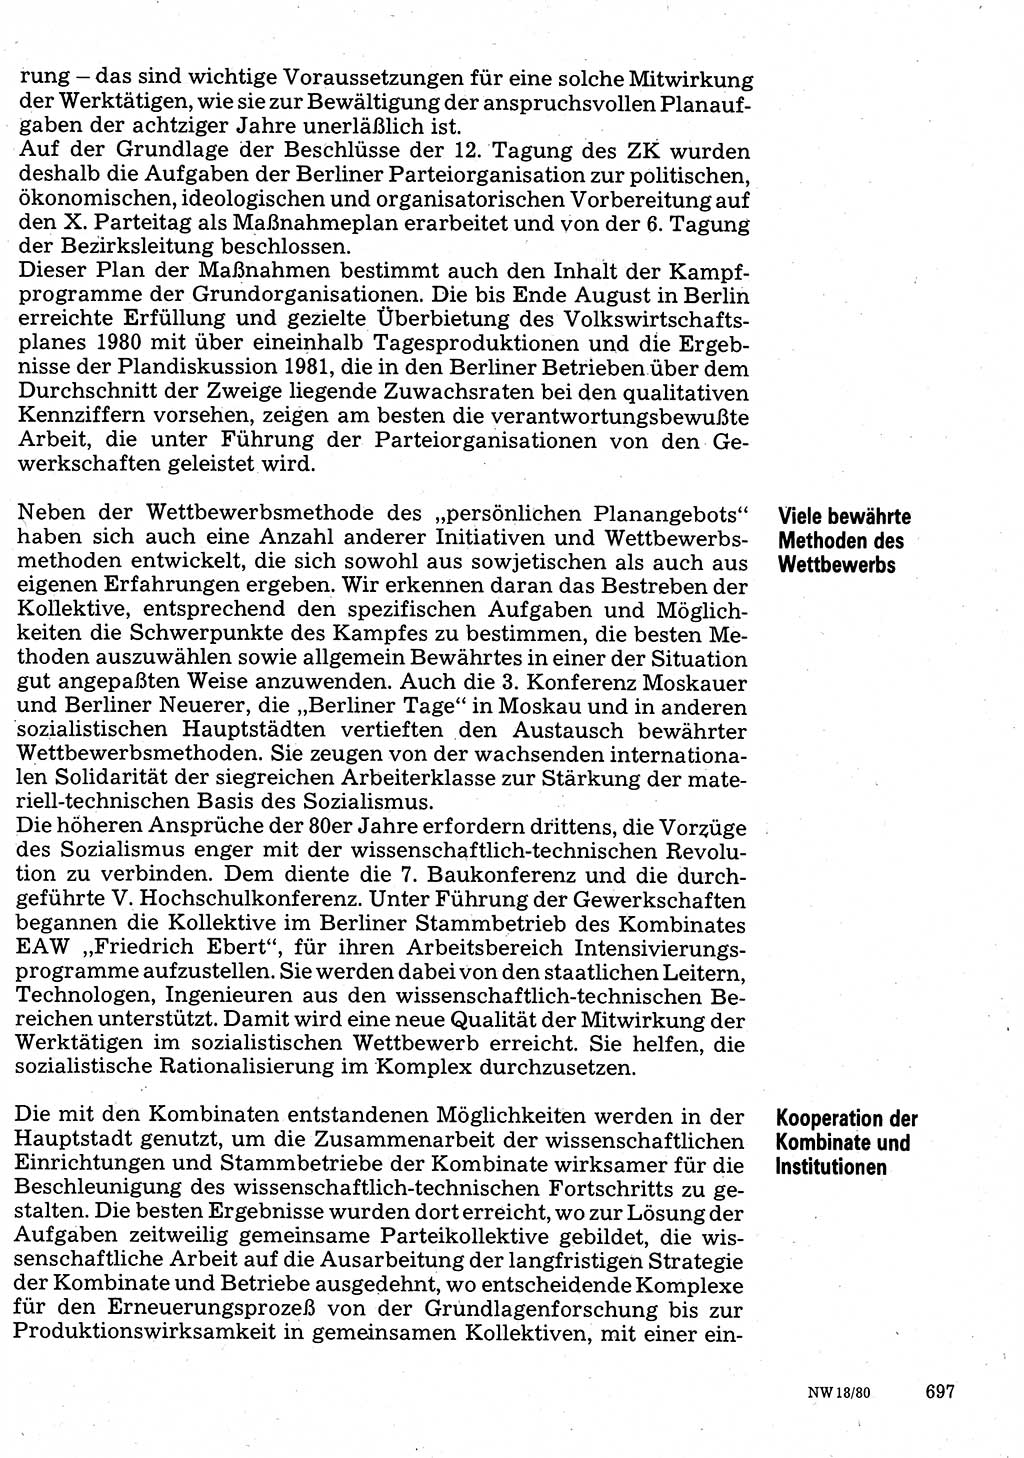 Neuer Weg (NW), Organ des Zentralkomitees (ZK) der SED (Sozialistische Einheitspartei Deutschlands) für Fragen des Parteilebens, 35. Jahrgang [Deutsche Demokratische Republik (DDR)] 1980, Seite 697 (NW ZK SED DDR 1980, S. 697)